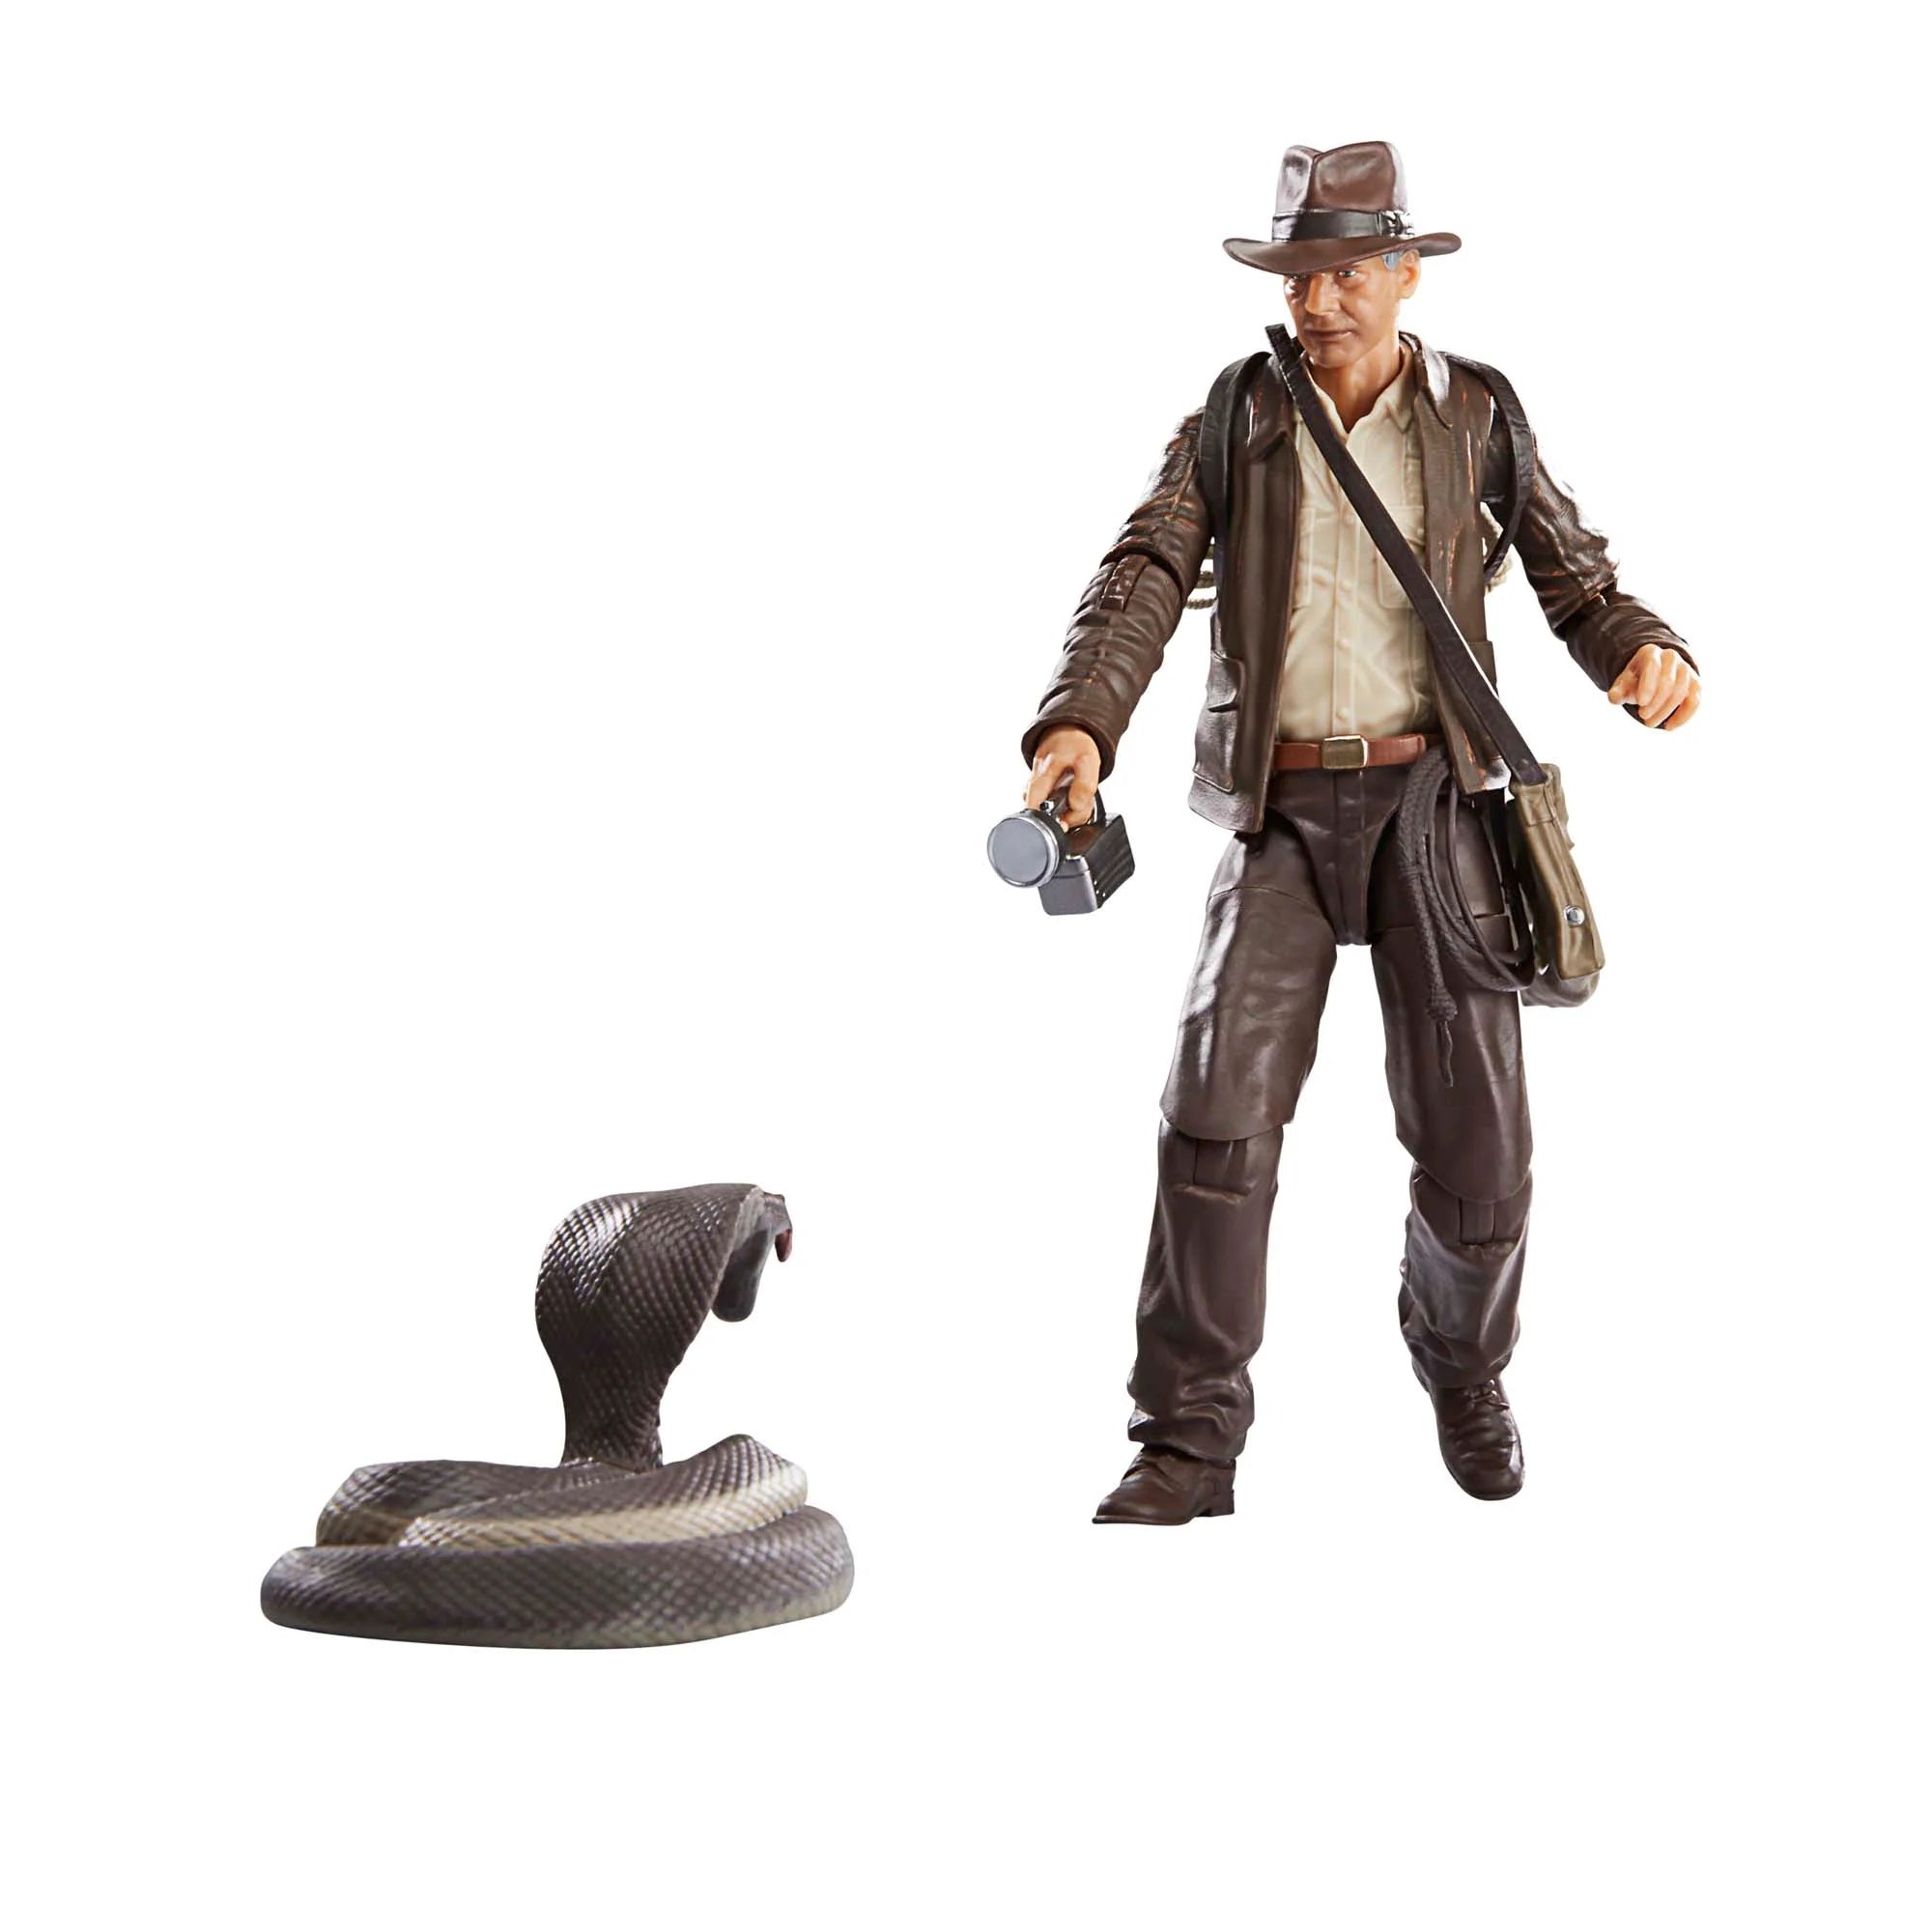 Indiana Jones Adventure Series Dial of Destiny Indiana Jones 6" Figure